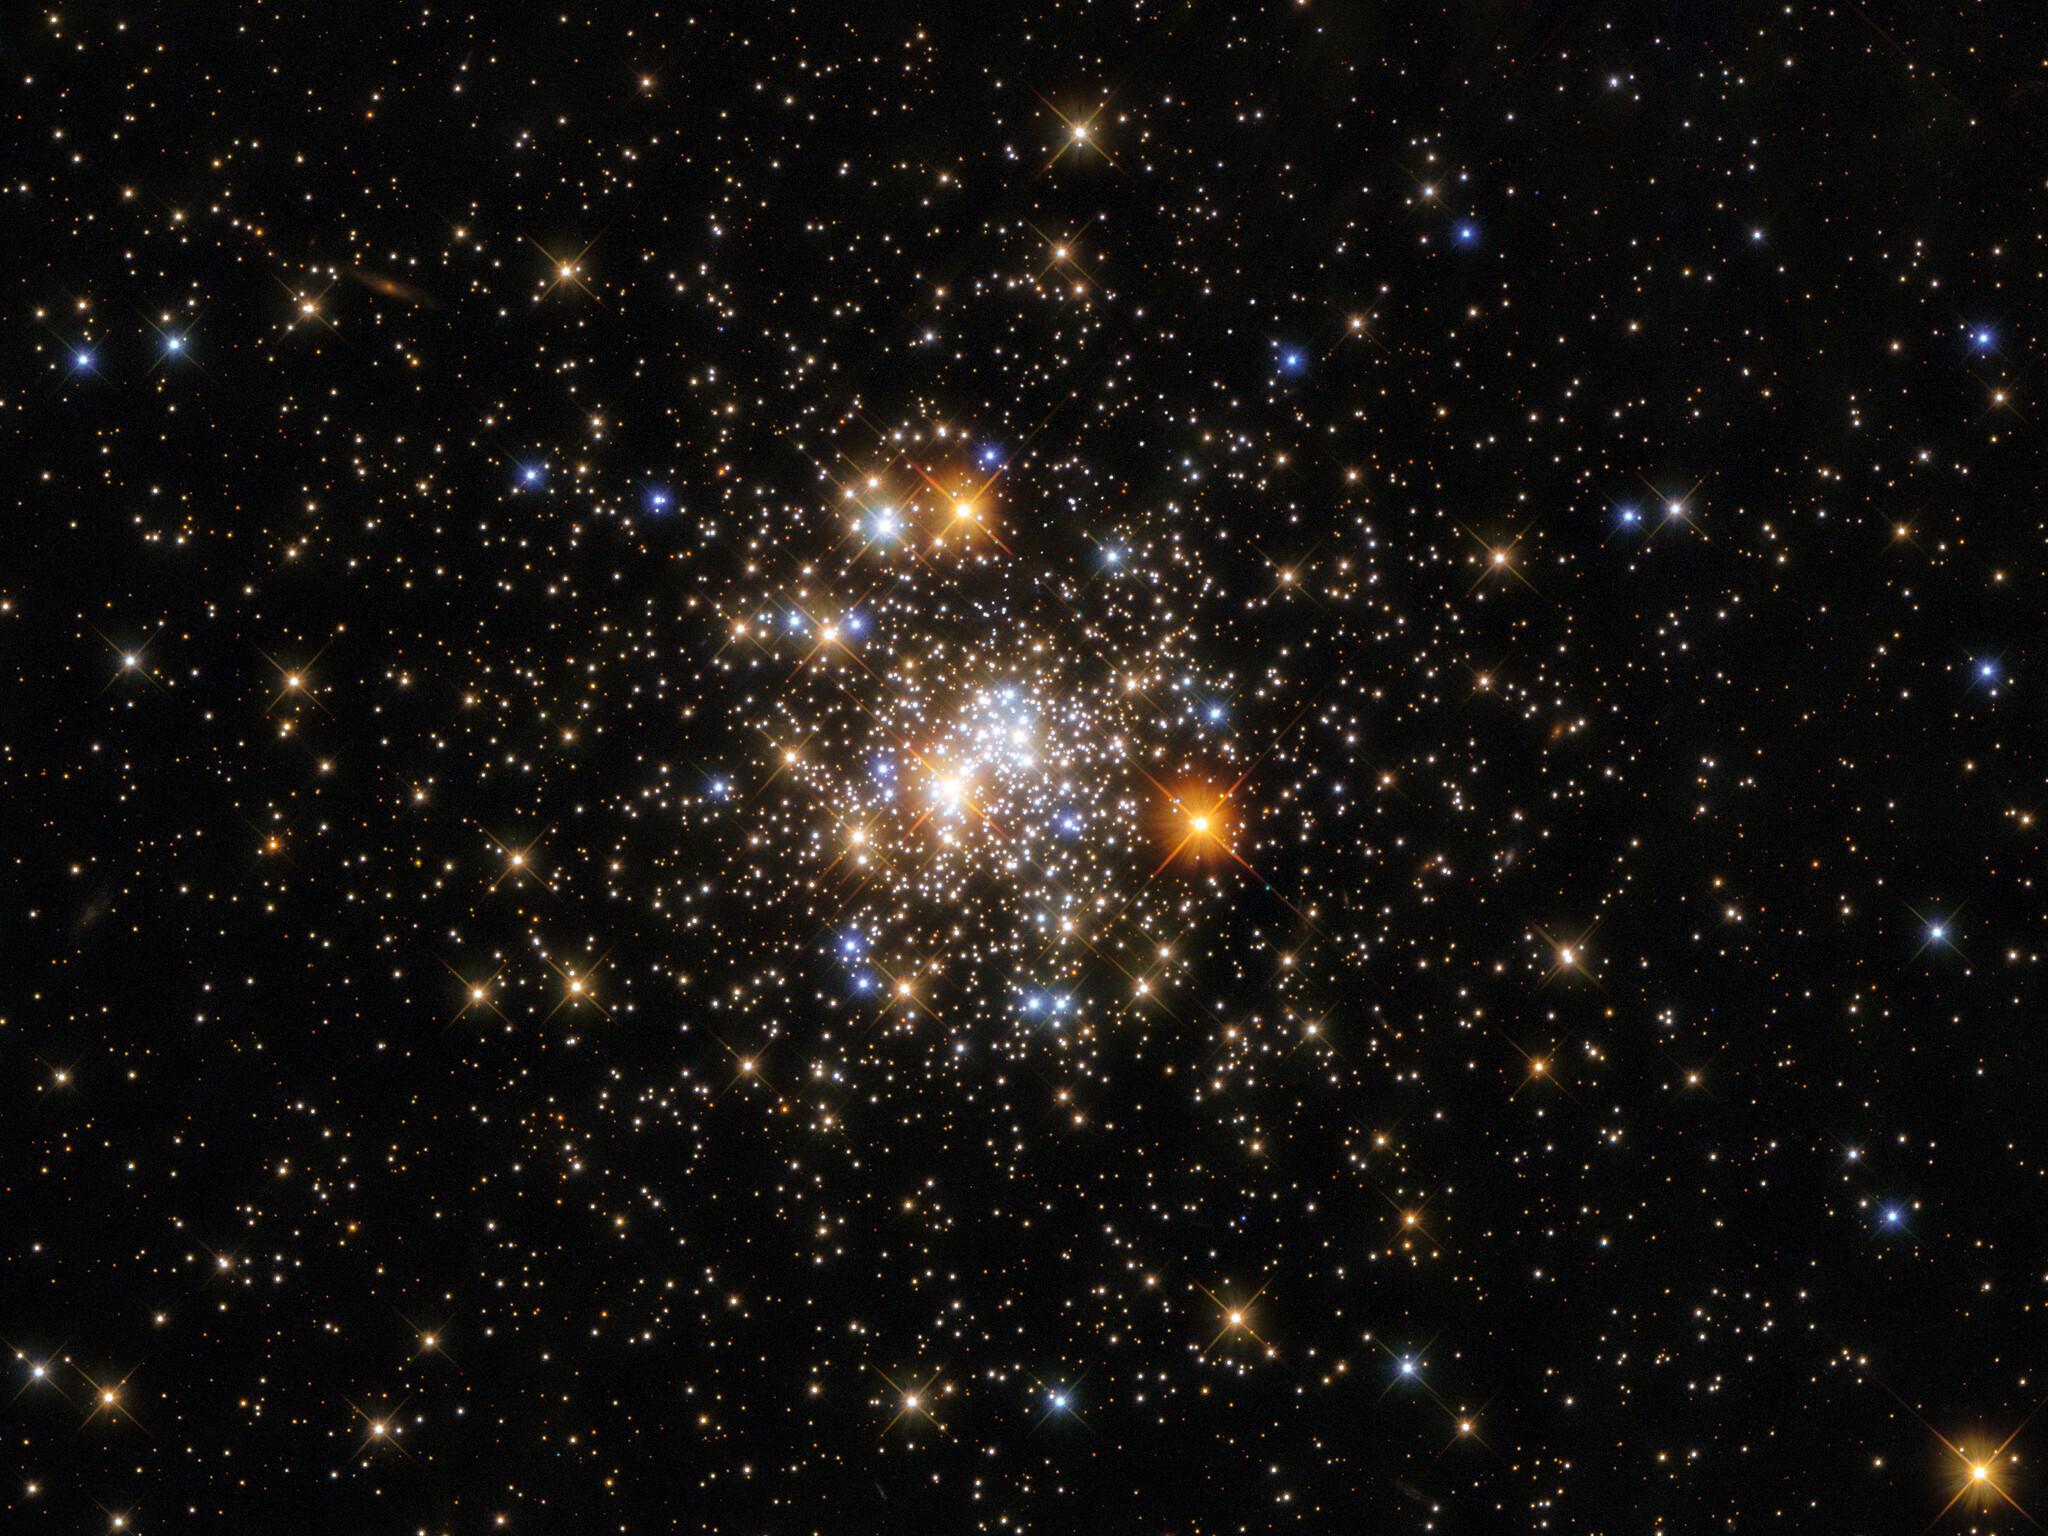 Сентябрьское изображение календаря Хаббла на 2022 год включает шаровое скопление, известное как NGC 6717, которое расположено относительно близко к Земле - на расстоянии 20 000 световых лет. Предоставлено: ЕКА / Хаббл и НАСА, А. Сараджедини. 